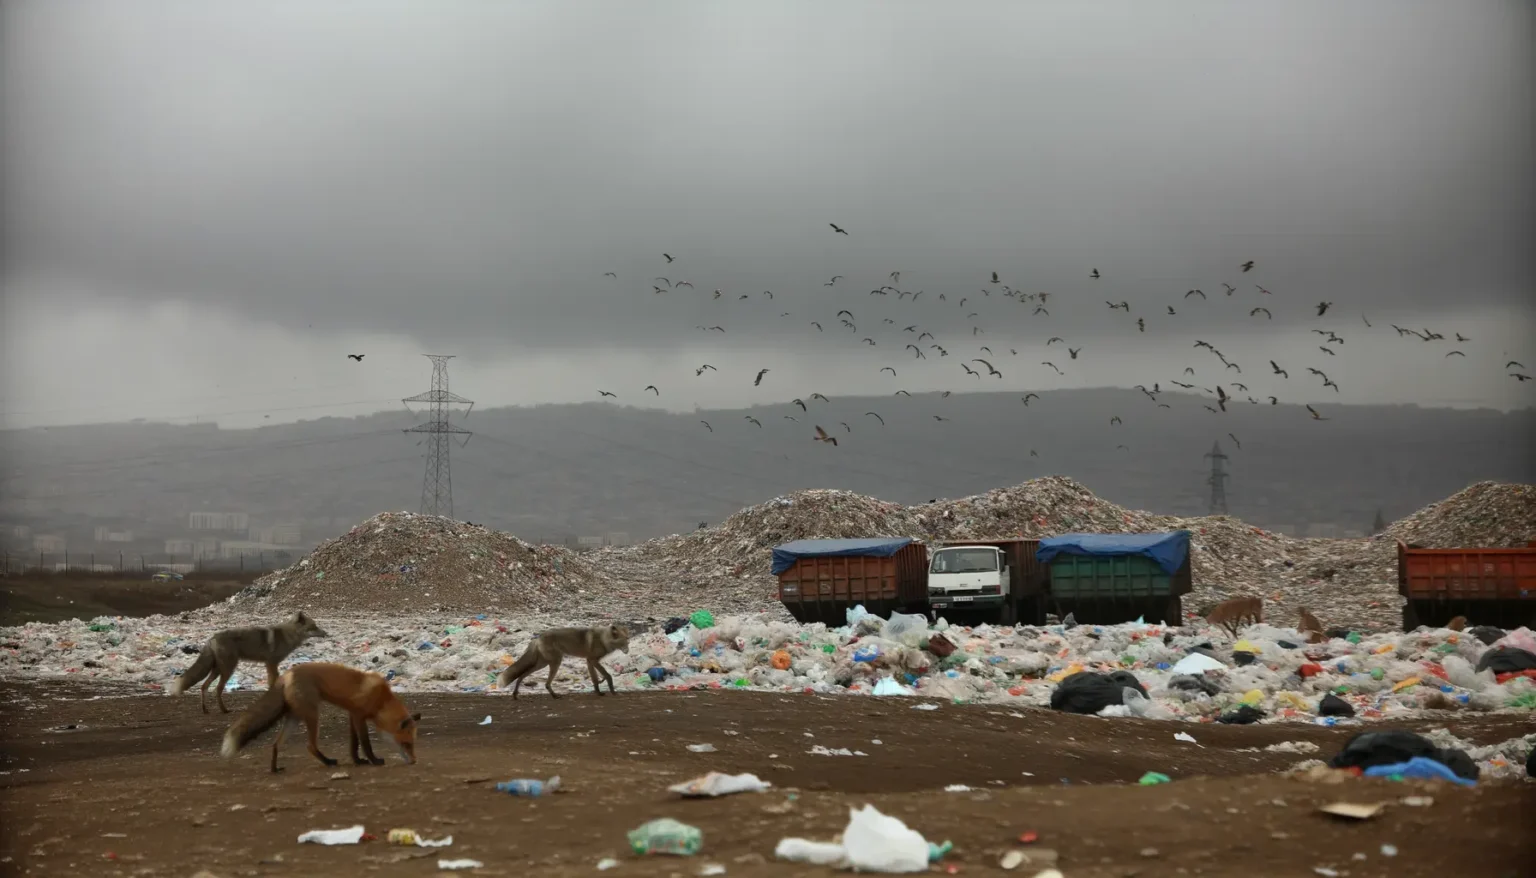 Ein Bild von drei streunenden Hunden, die auf einer Mülldeponie zwischen verstreutem Abfall herumlaufen. Im Hintergrund sieht man große Müllberge und darüber einen Schwarm von Vögeln im Flug. Düstere Wolken hängen über der Szene, und im Hintergrund erkennt man Strommasten und die Silhouette eines Hügels oder einer kleinen Bergkette.